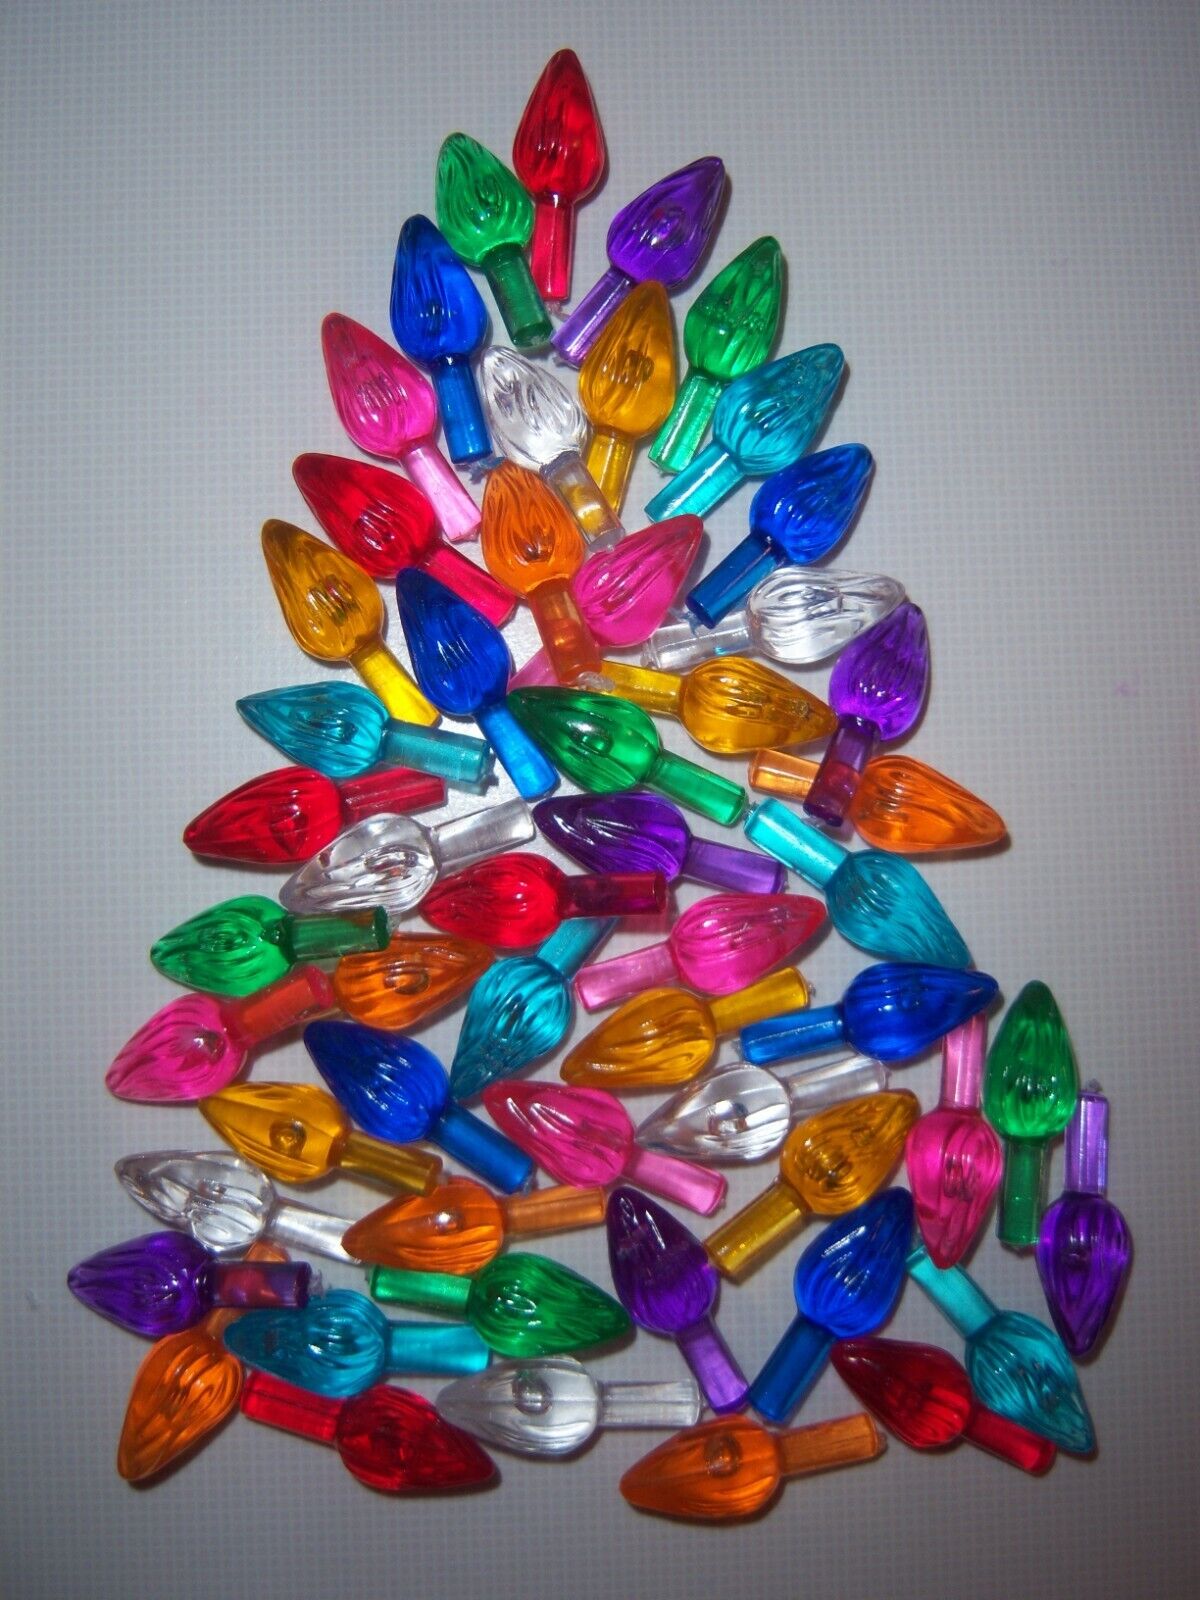 100 Medium Twist Bulbs Ceramic Christmas Tree Lights Peg 9 ASSORTED COLORS